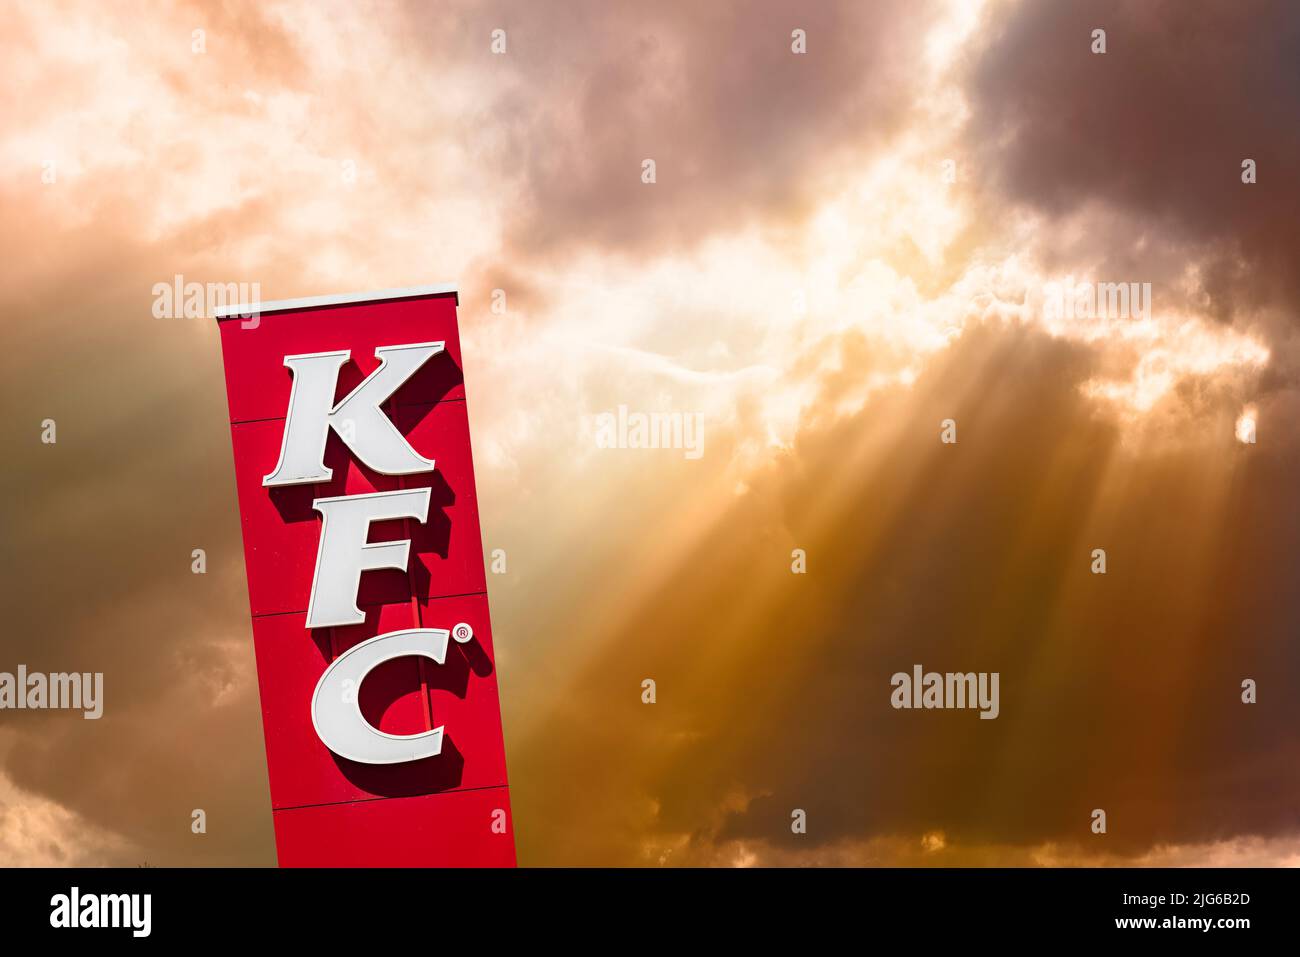 Werbeschild der Restaurantkette KFC Foto Stock